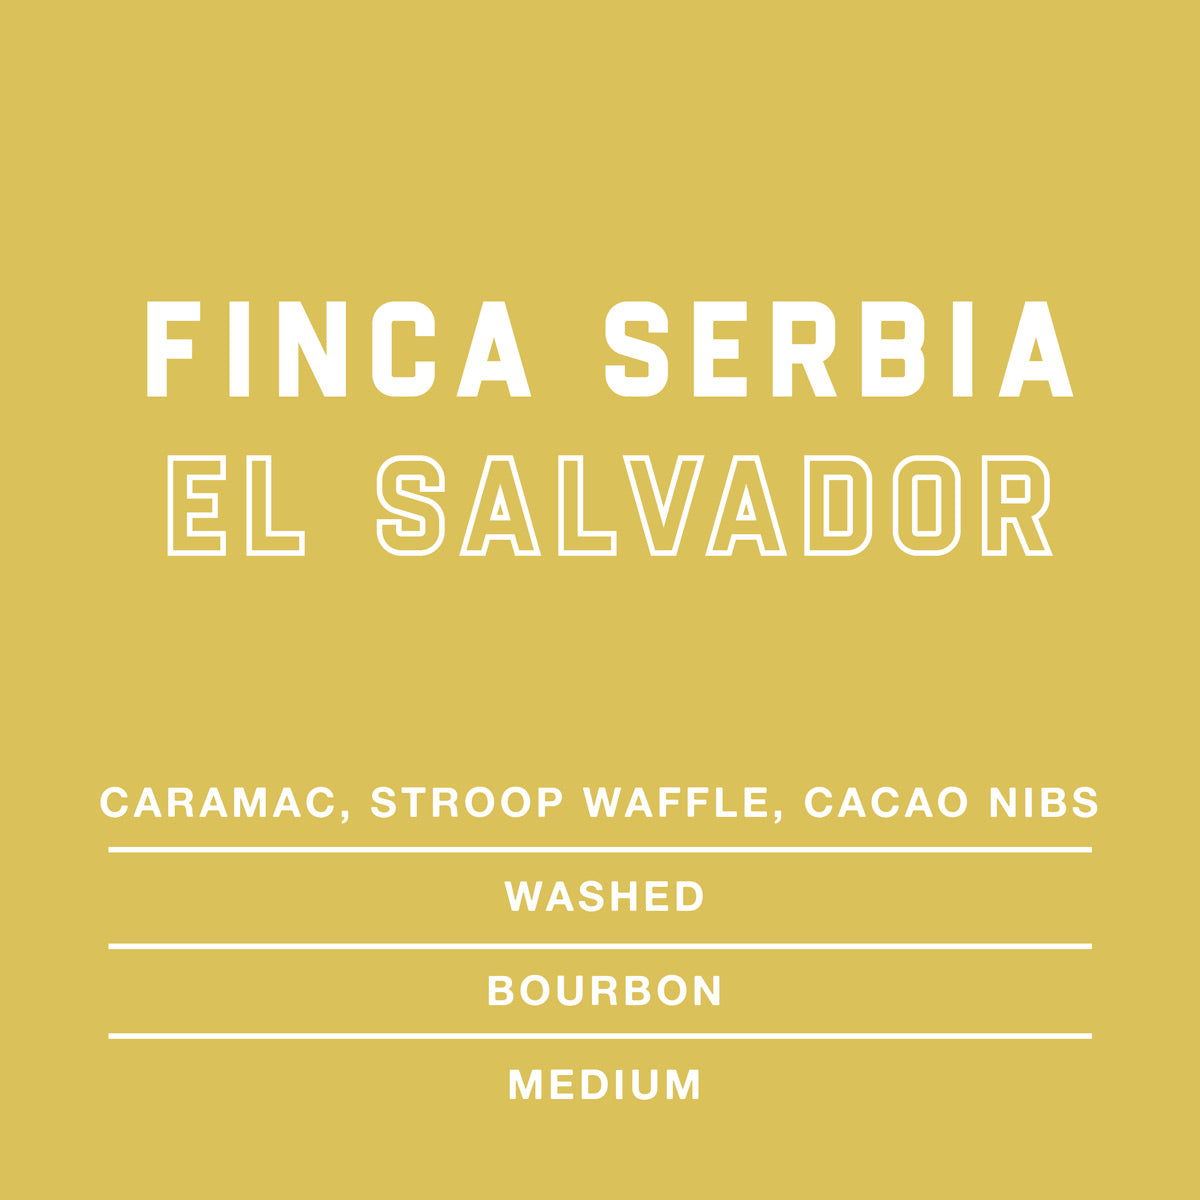 Finca-Serbia-El-Salvador-Single-Origin-Coffee